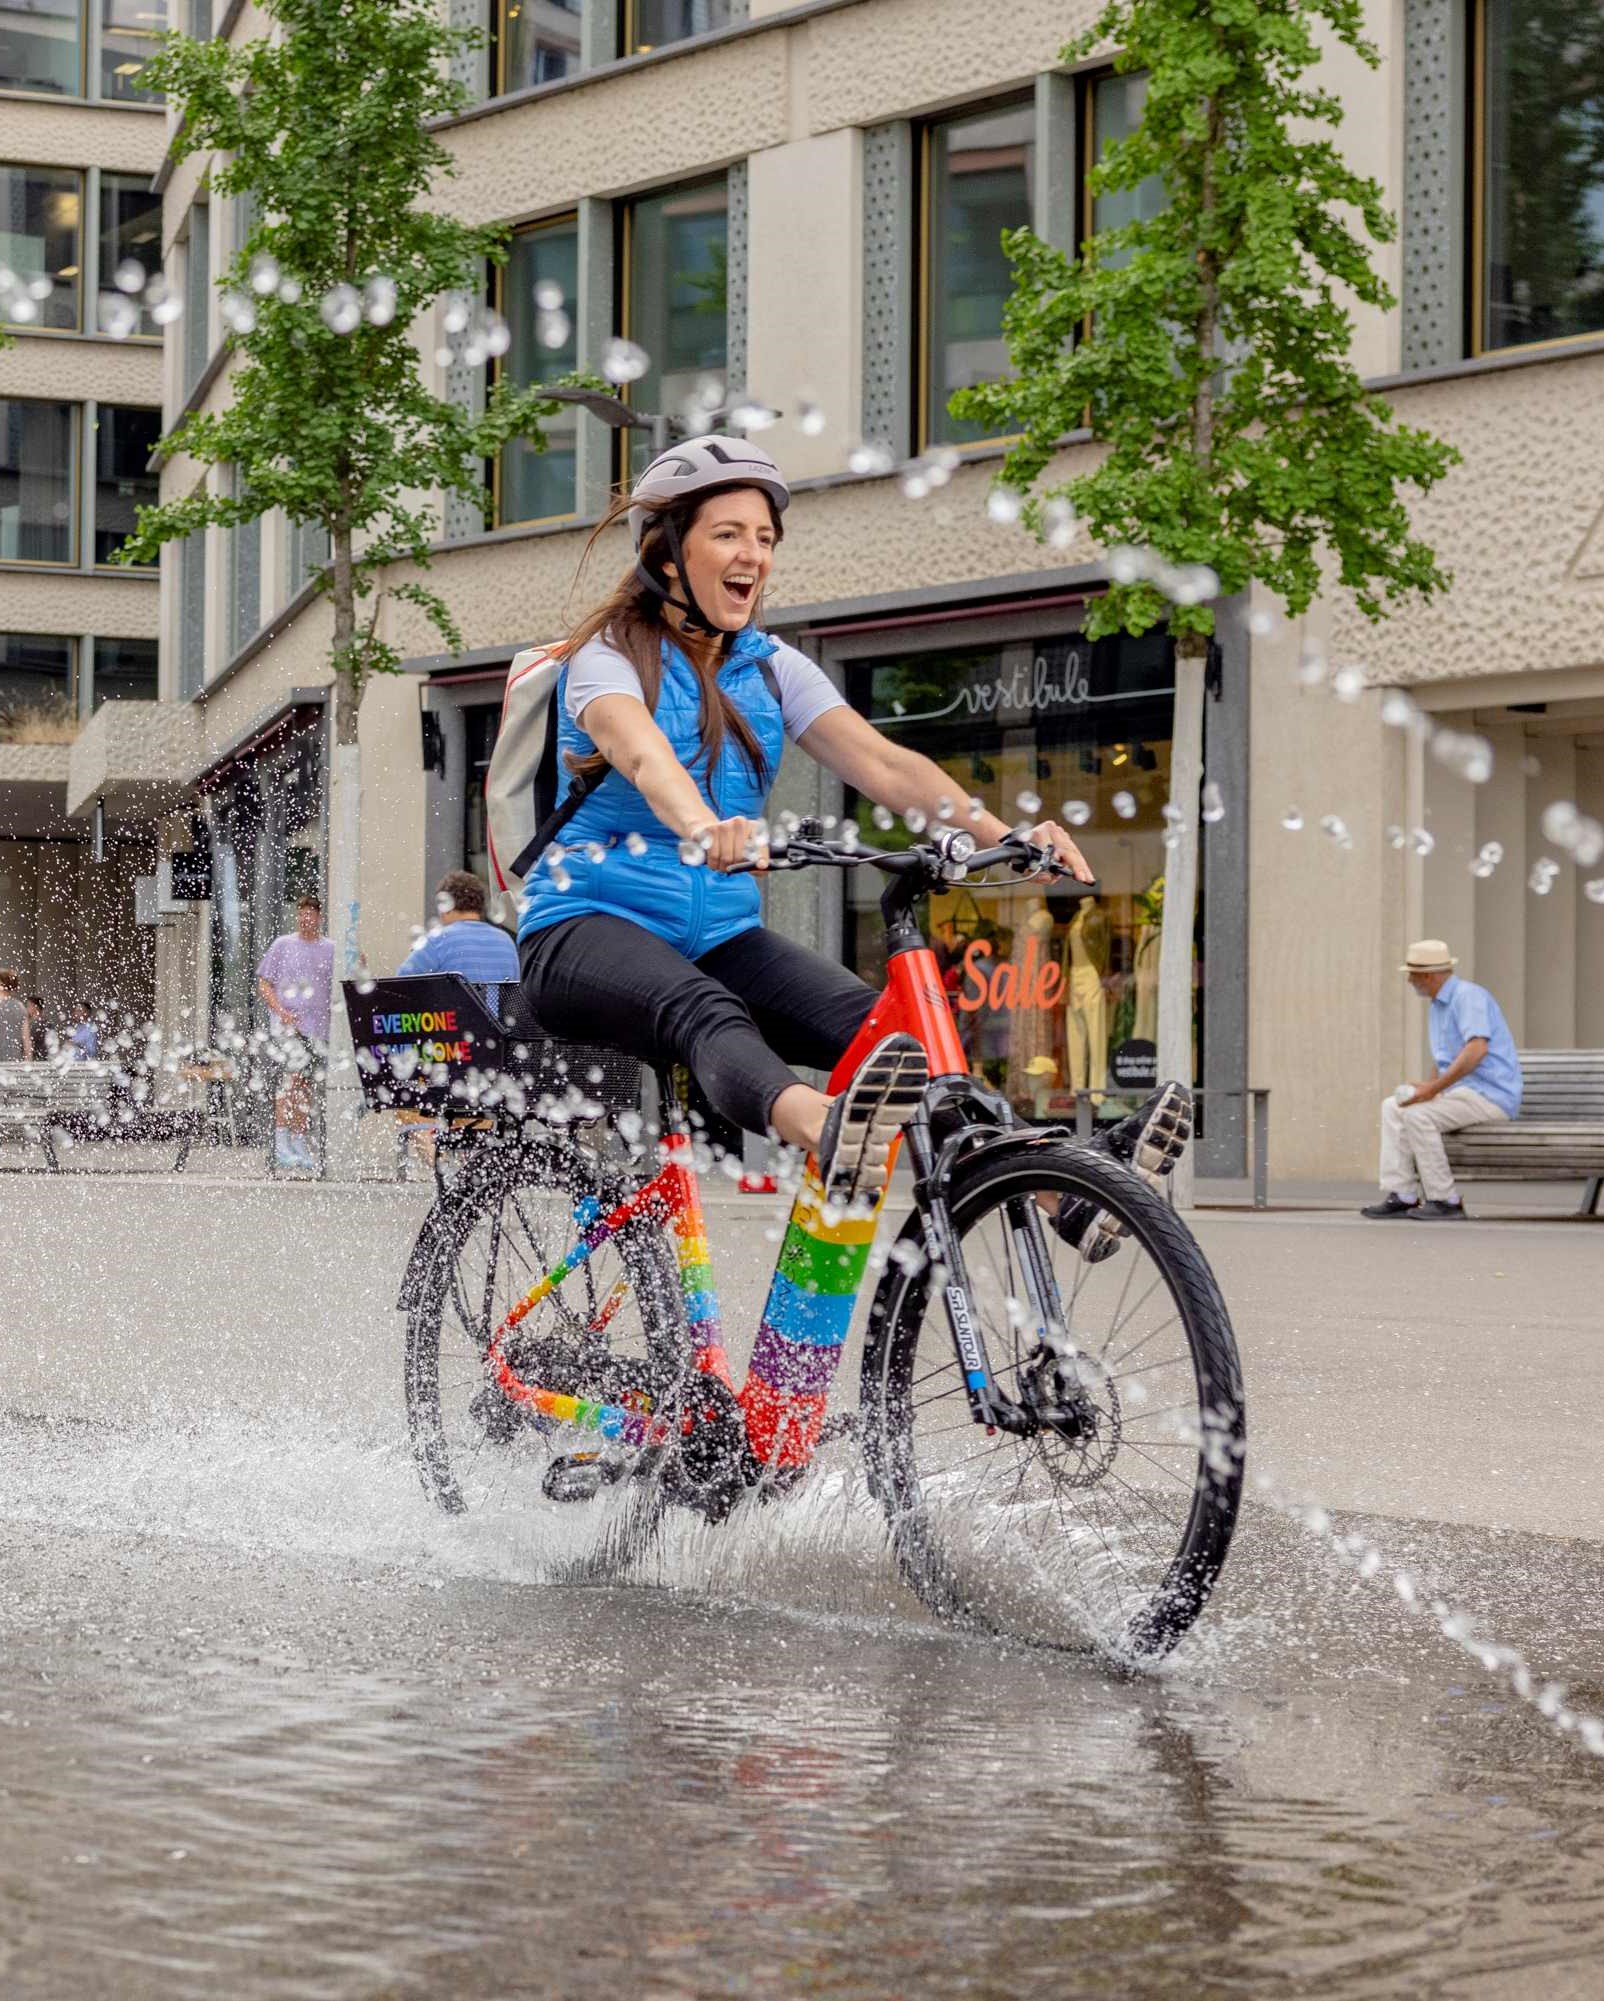 Radfahrerin auf E-Bike, fährt durch Wasserfontäne